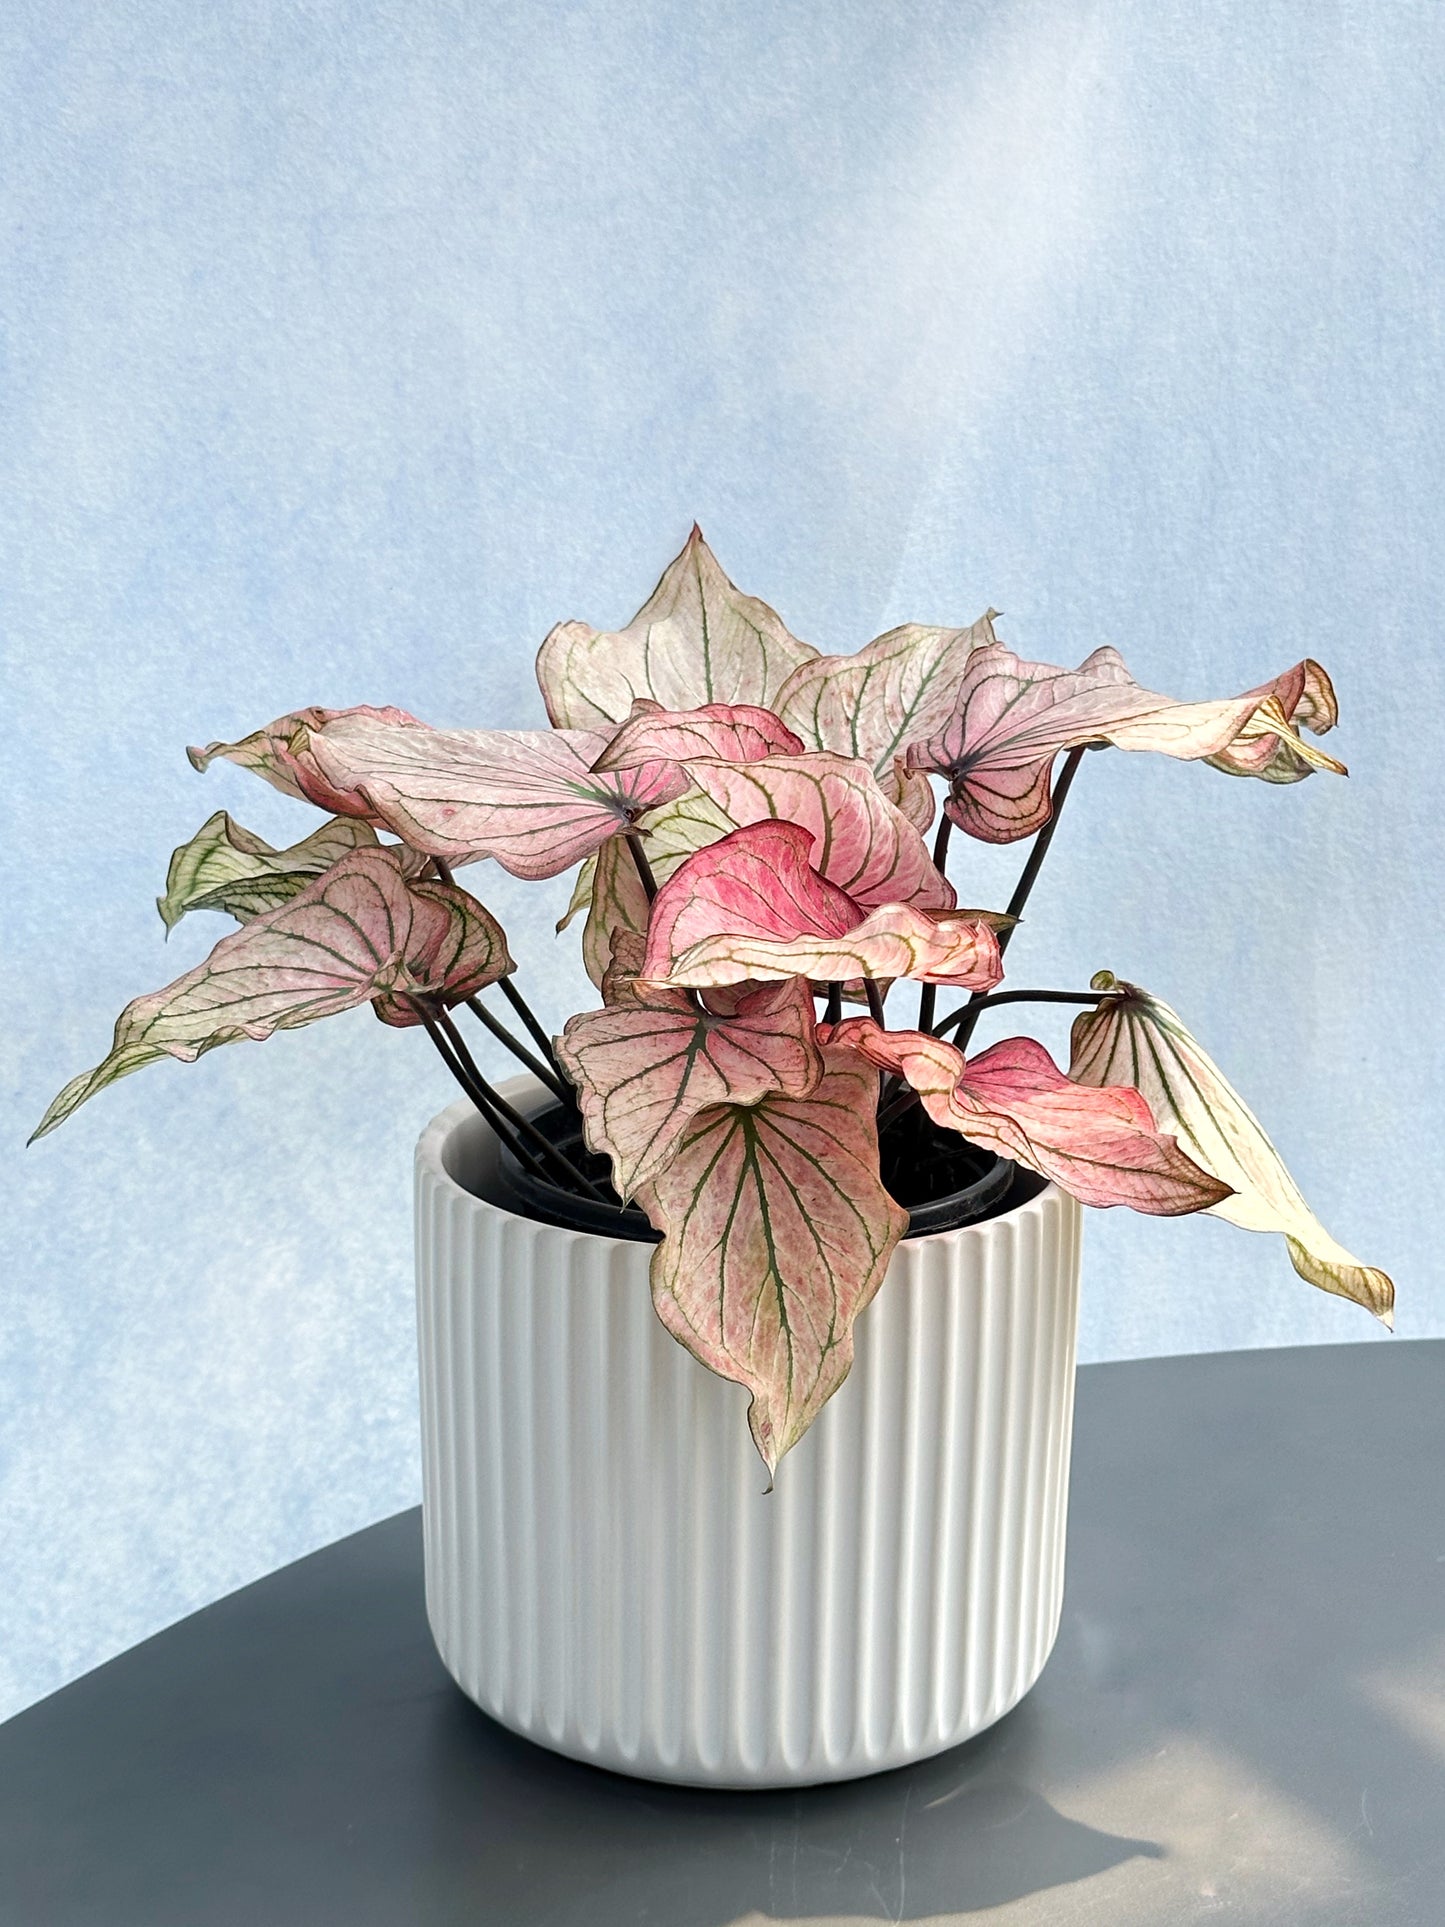 Caladium bicolor#1-Pink 'Lady god' | Caladium bicolor